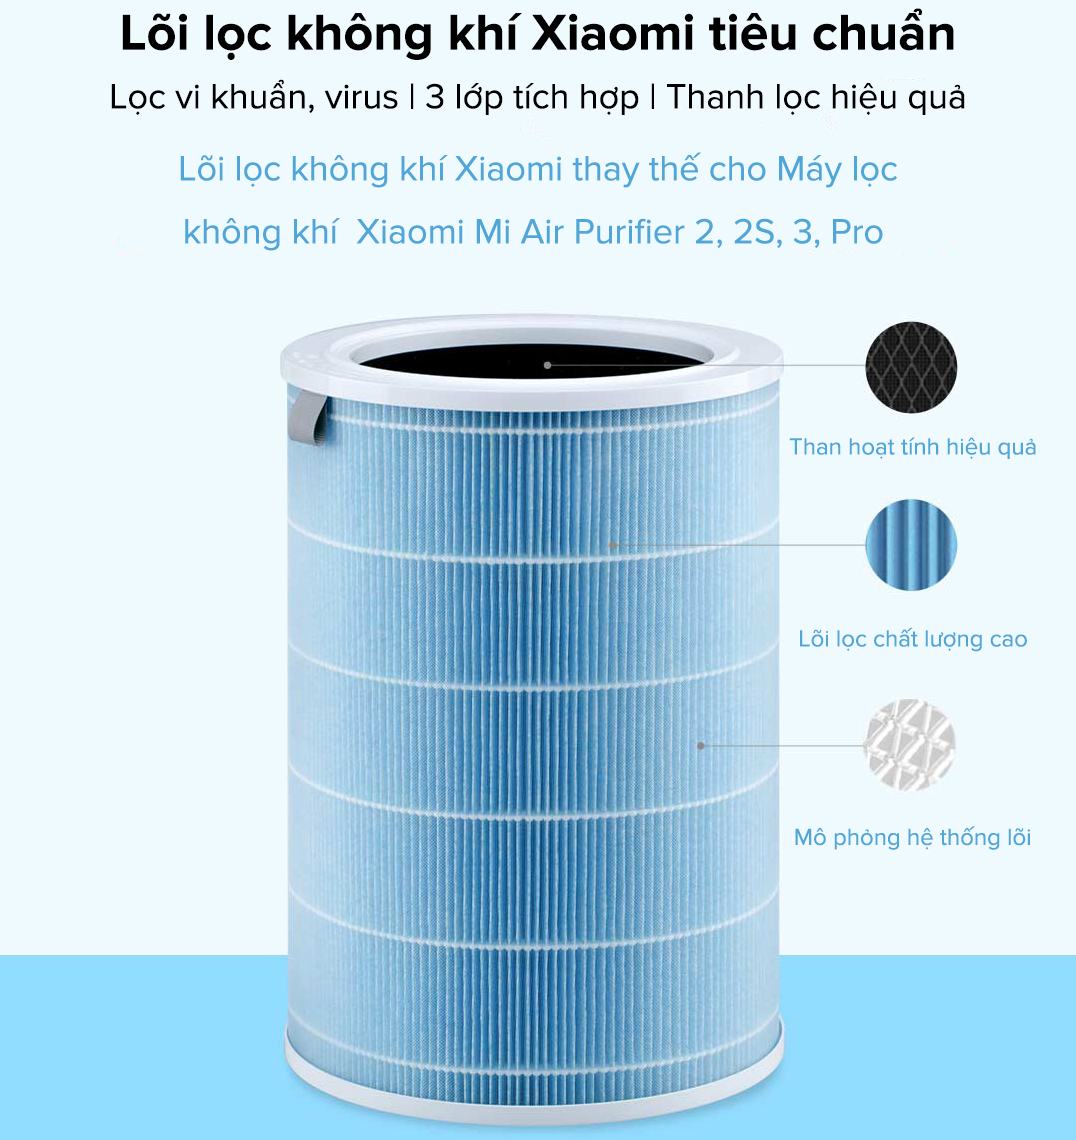 Lõi lọc không khí Xiaomi Air Purifier Filter tiêu chuẩn